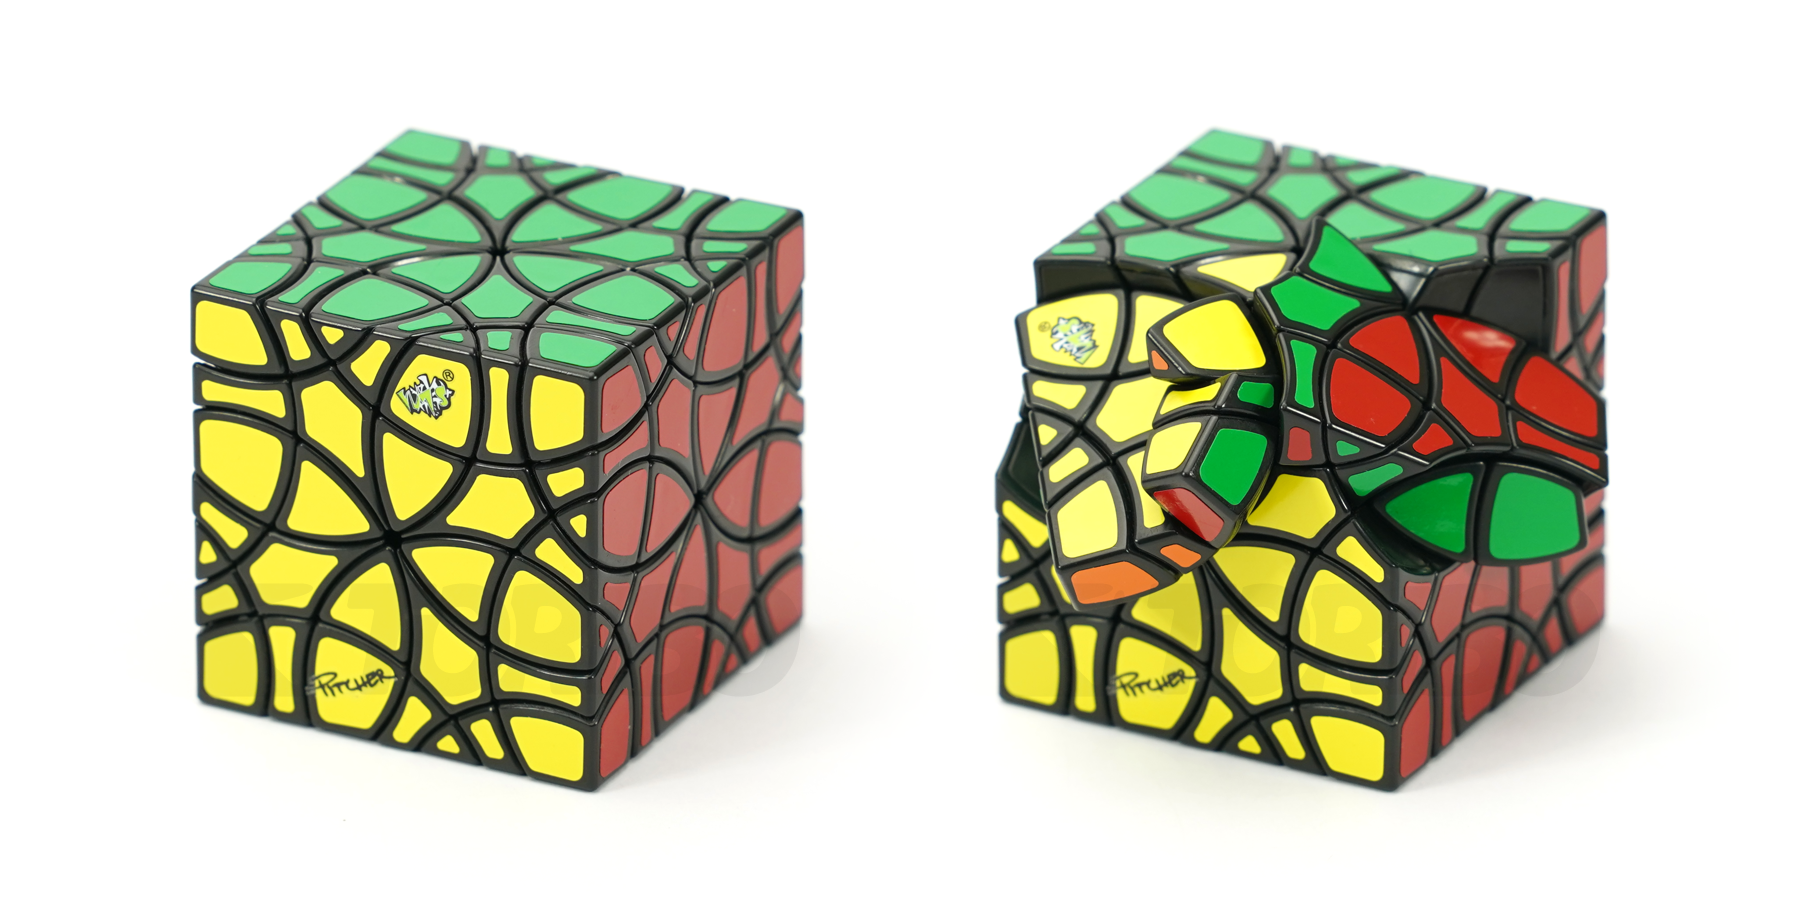 triboxストア / LanLan Andromeda Cube